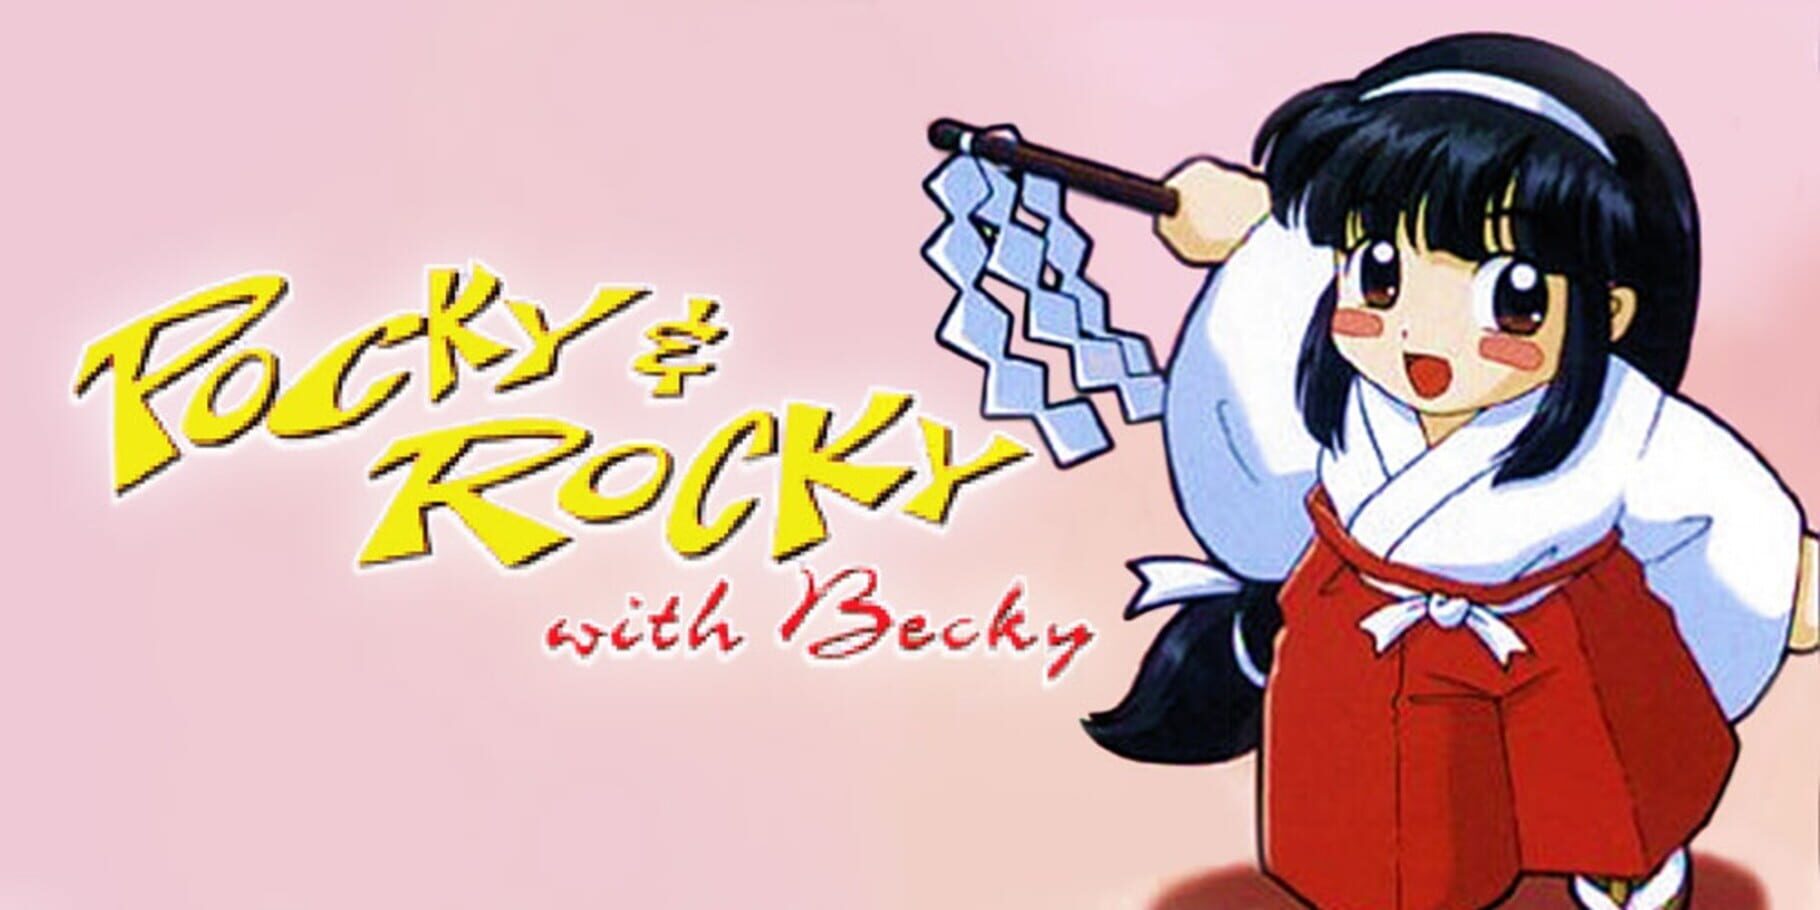 Arte - Pocky & Rocky with Becky